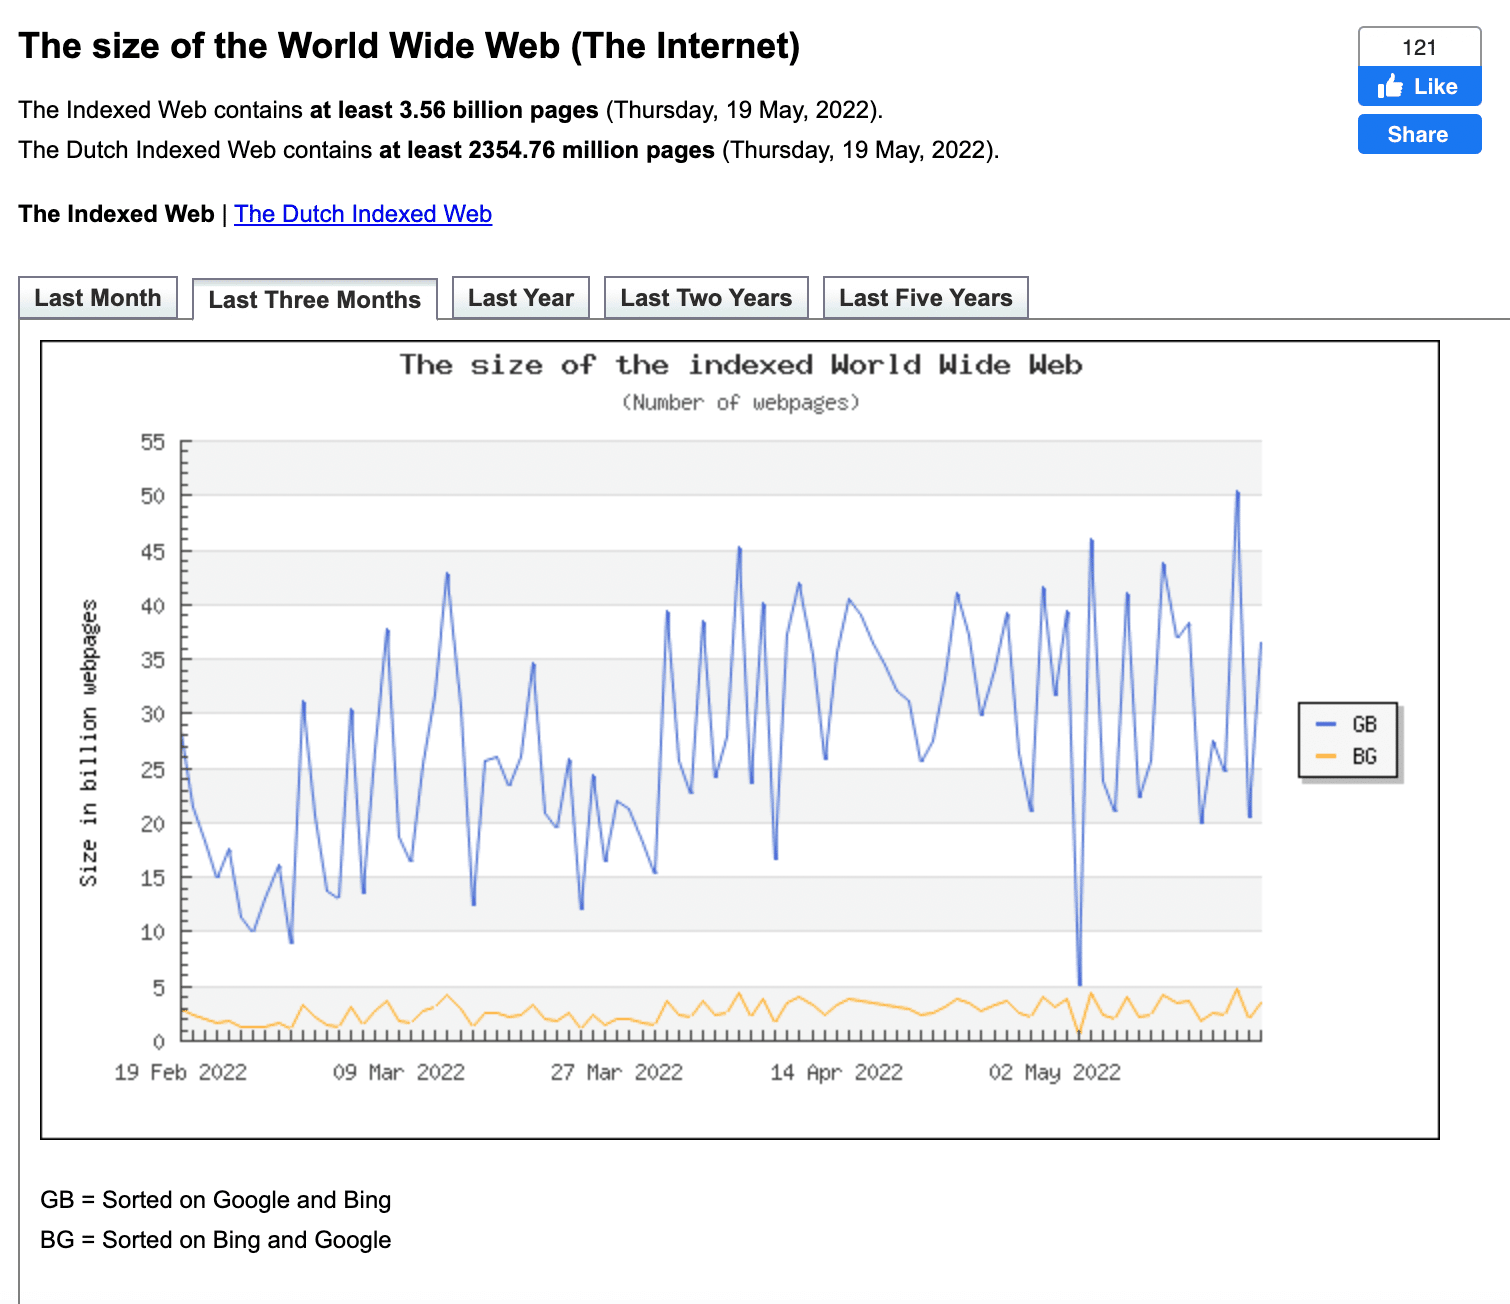 Istogramma che mostra la crescita della dimensione del World Wide Web dal 19 febbraio 2022 al 2 maggio 2022: con diverse oscillazioni, si è passati da 25 miliardi a 35 miliardi di pagine